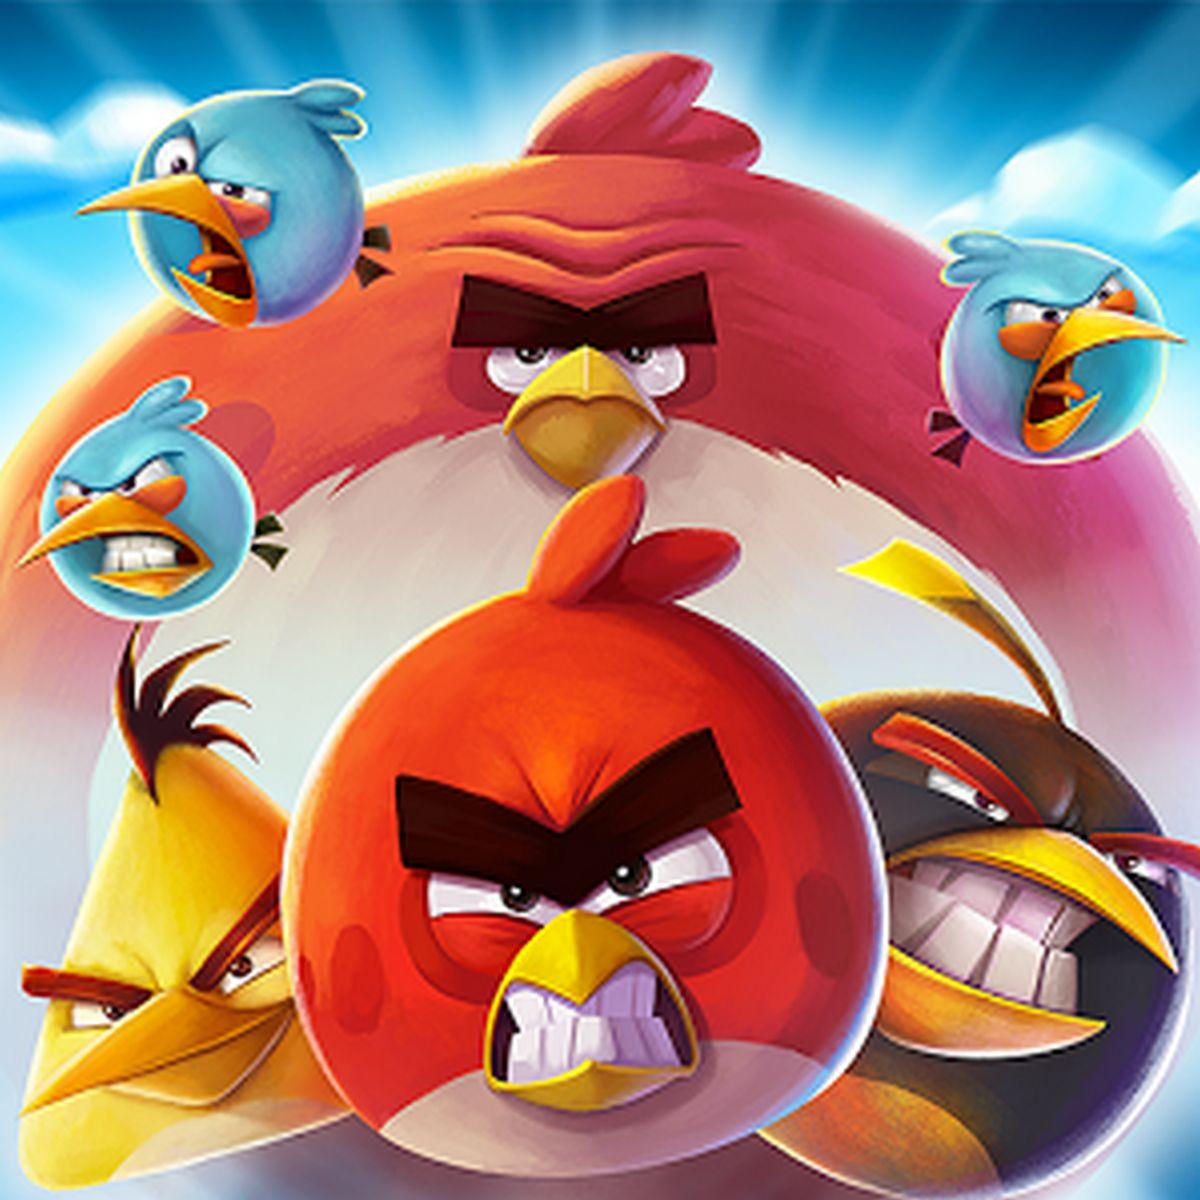 Angry Birds 2 APK MOD